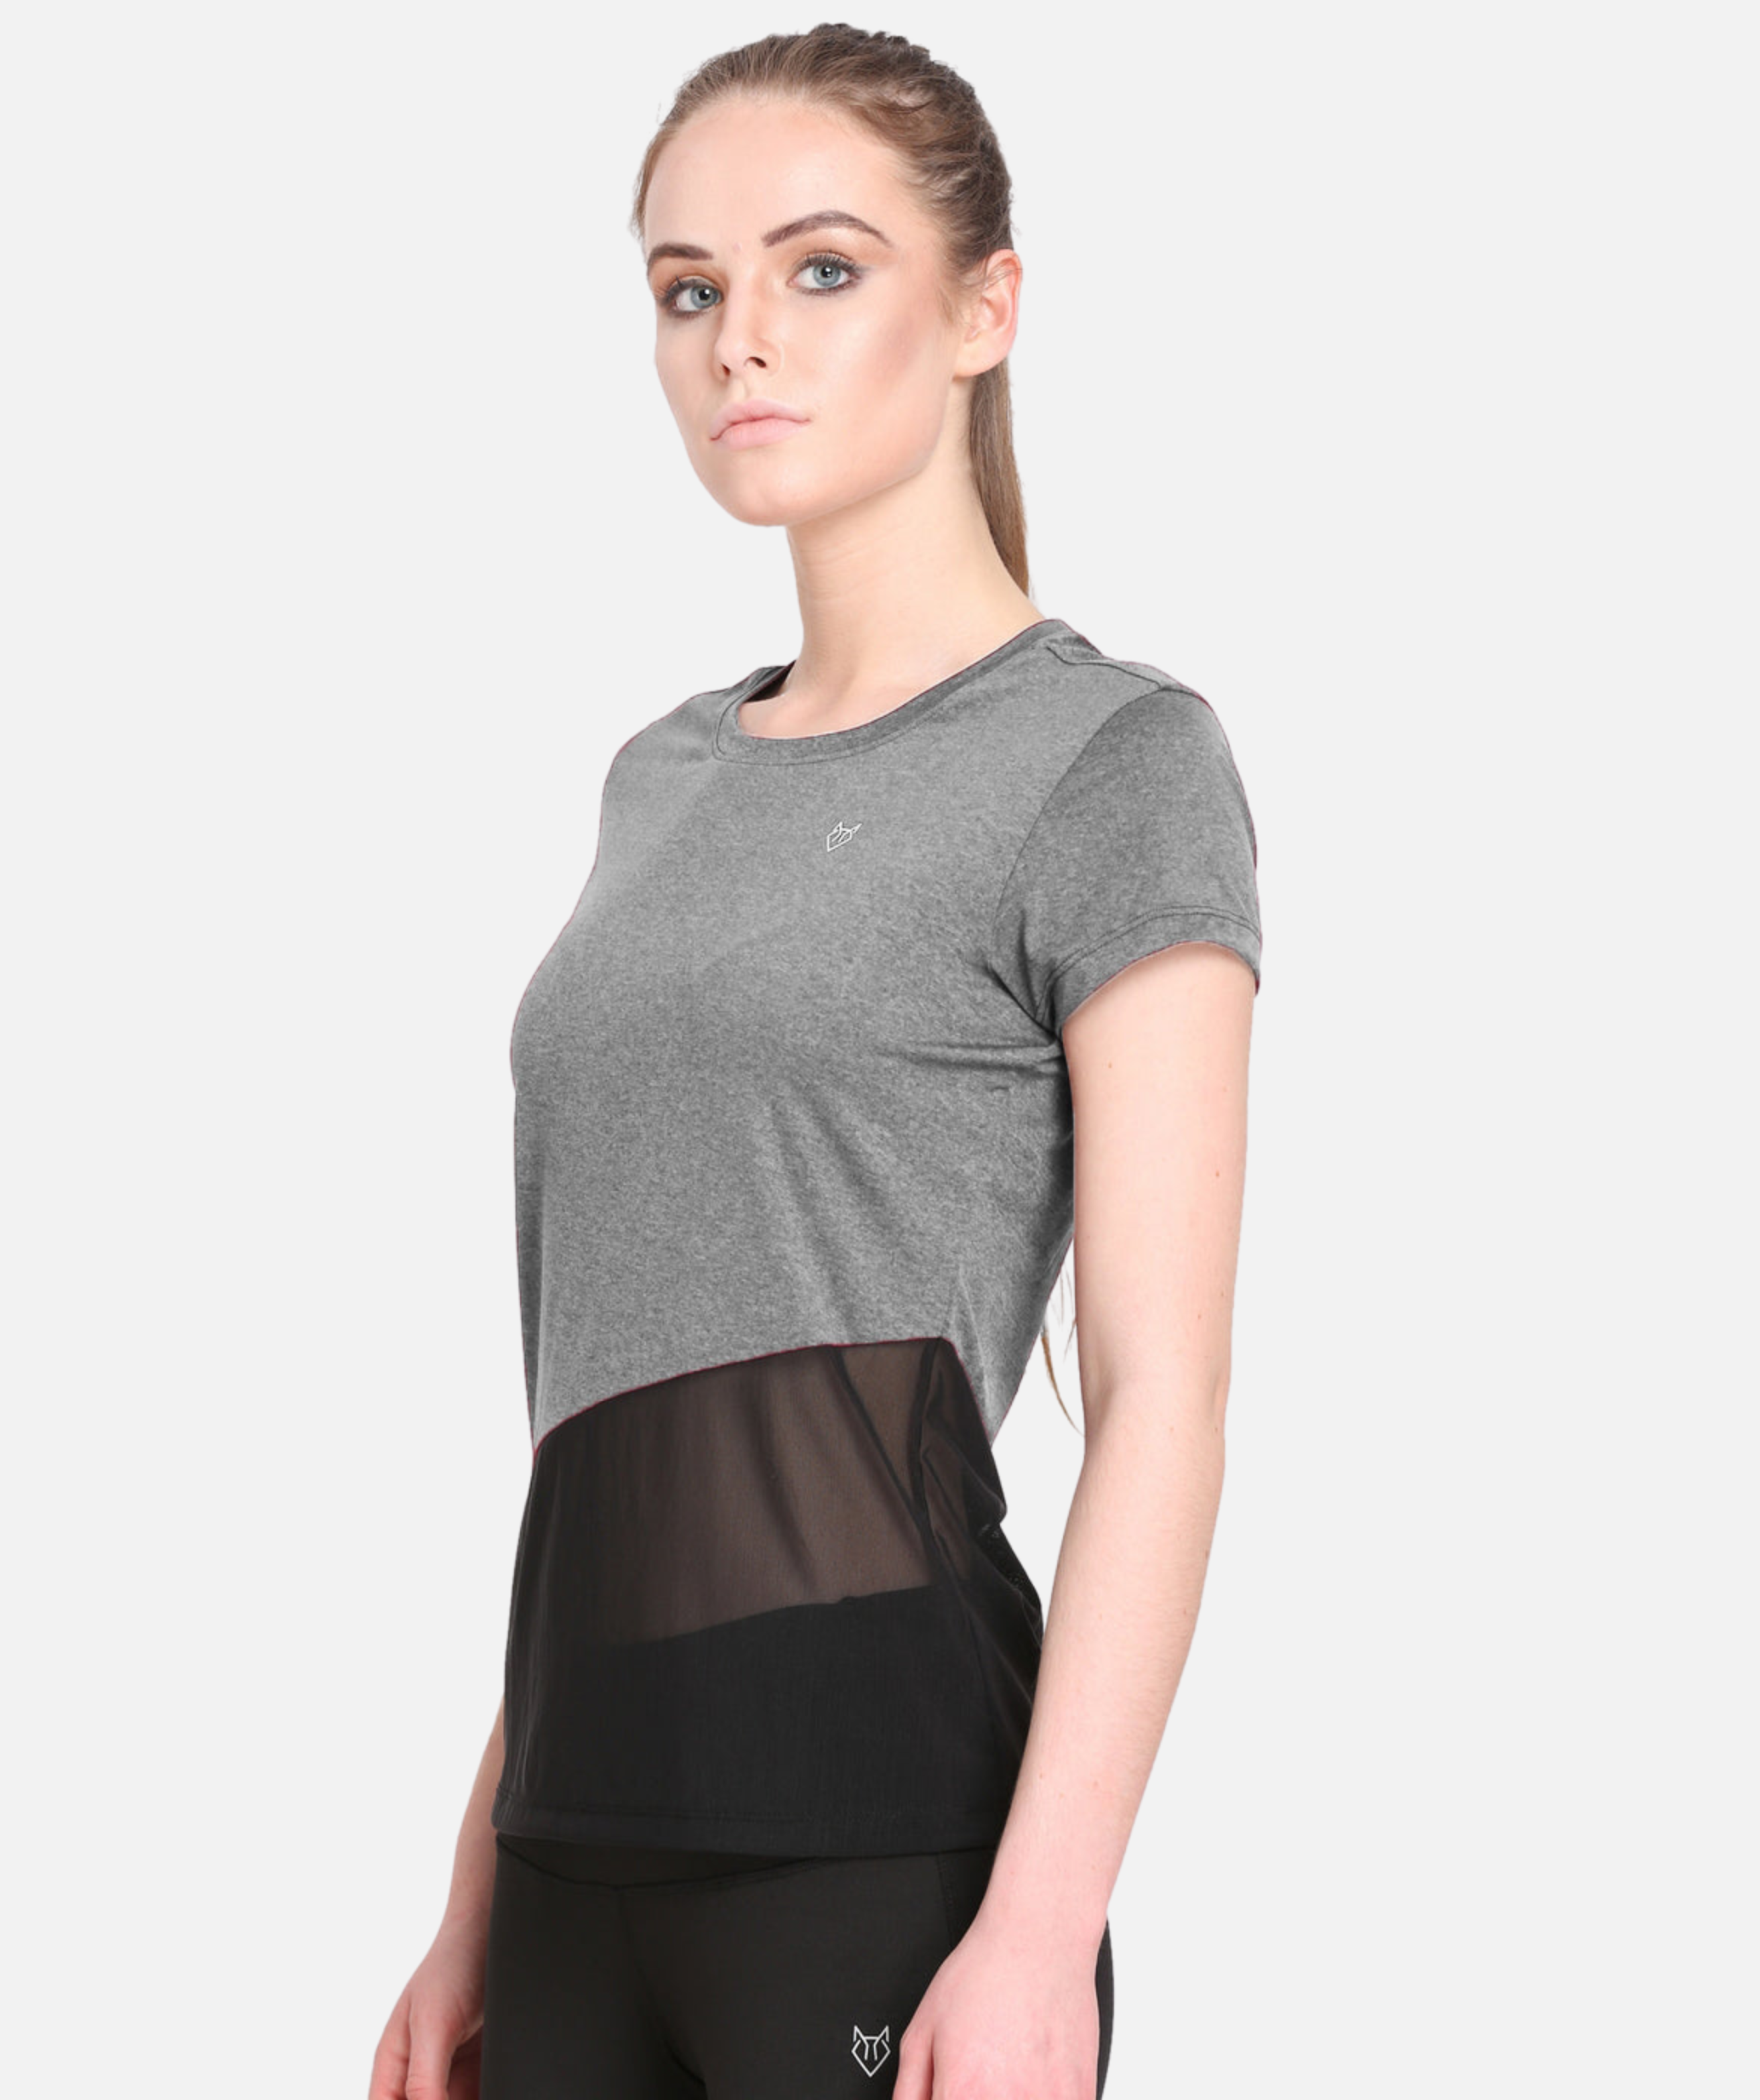 Mesh Cut Printed Tshirt | Unique Pattern | Latest Fashion Women's Upper